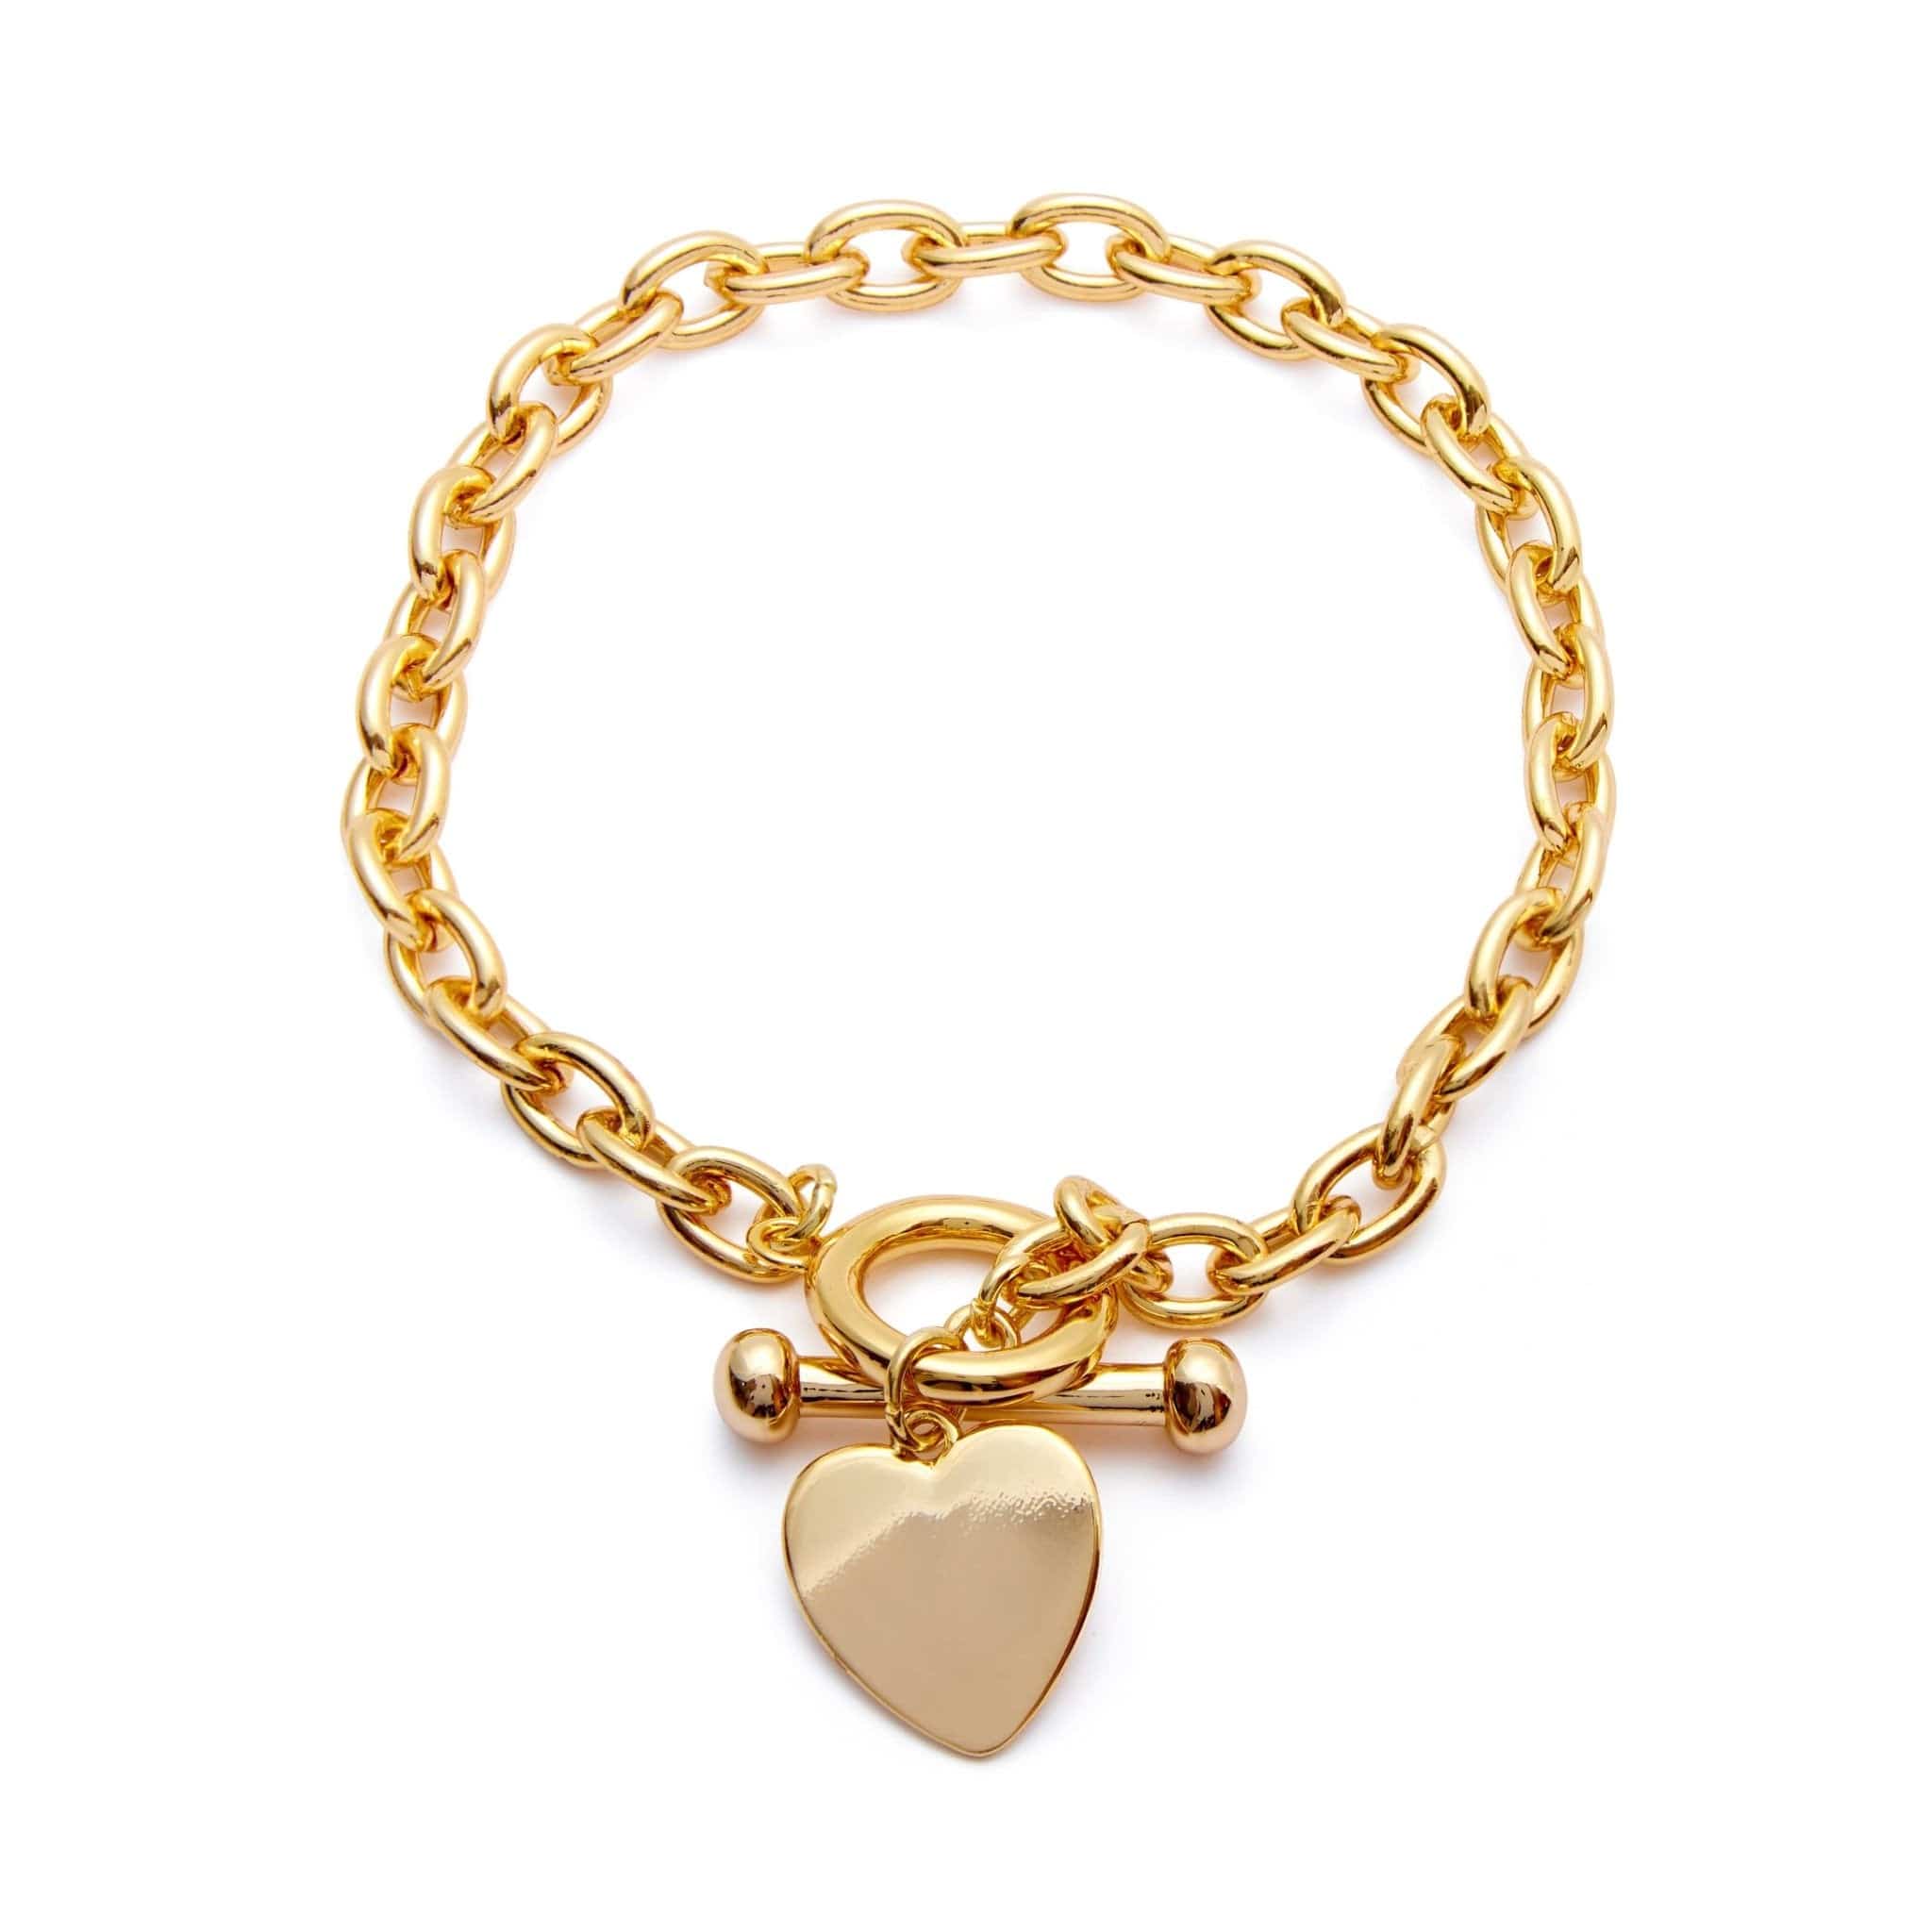 18k Gold-Bonded Bracelets 6.5" - 8" Adjustable / 18k Gold TOGGLE HEART BRACELET 6MM